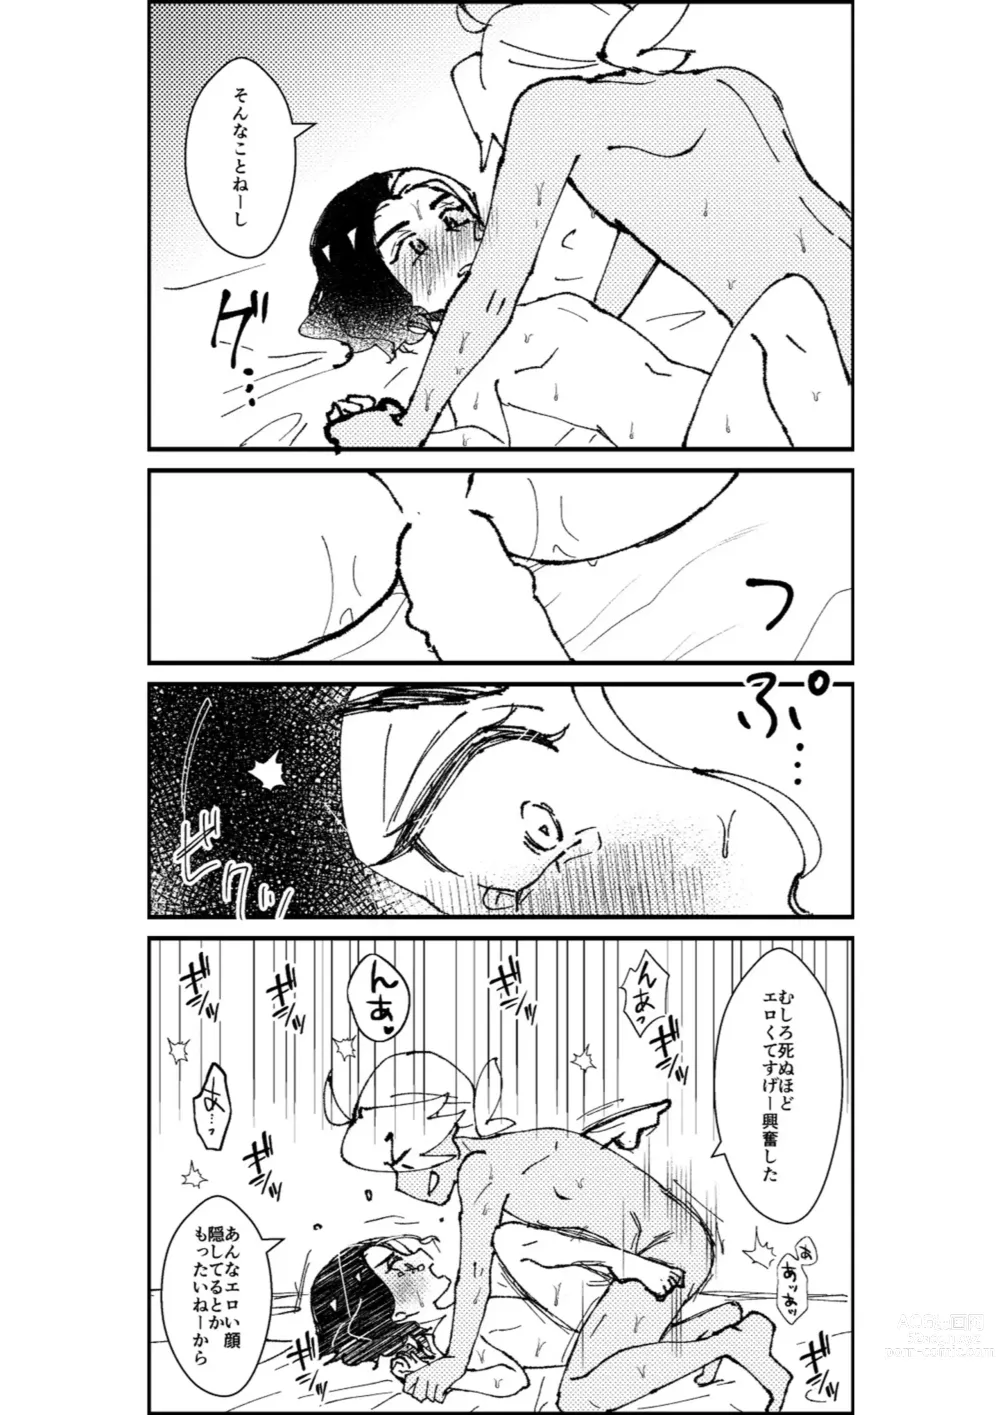 Page 68 of doujinshi Furiame Hanashi 2